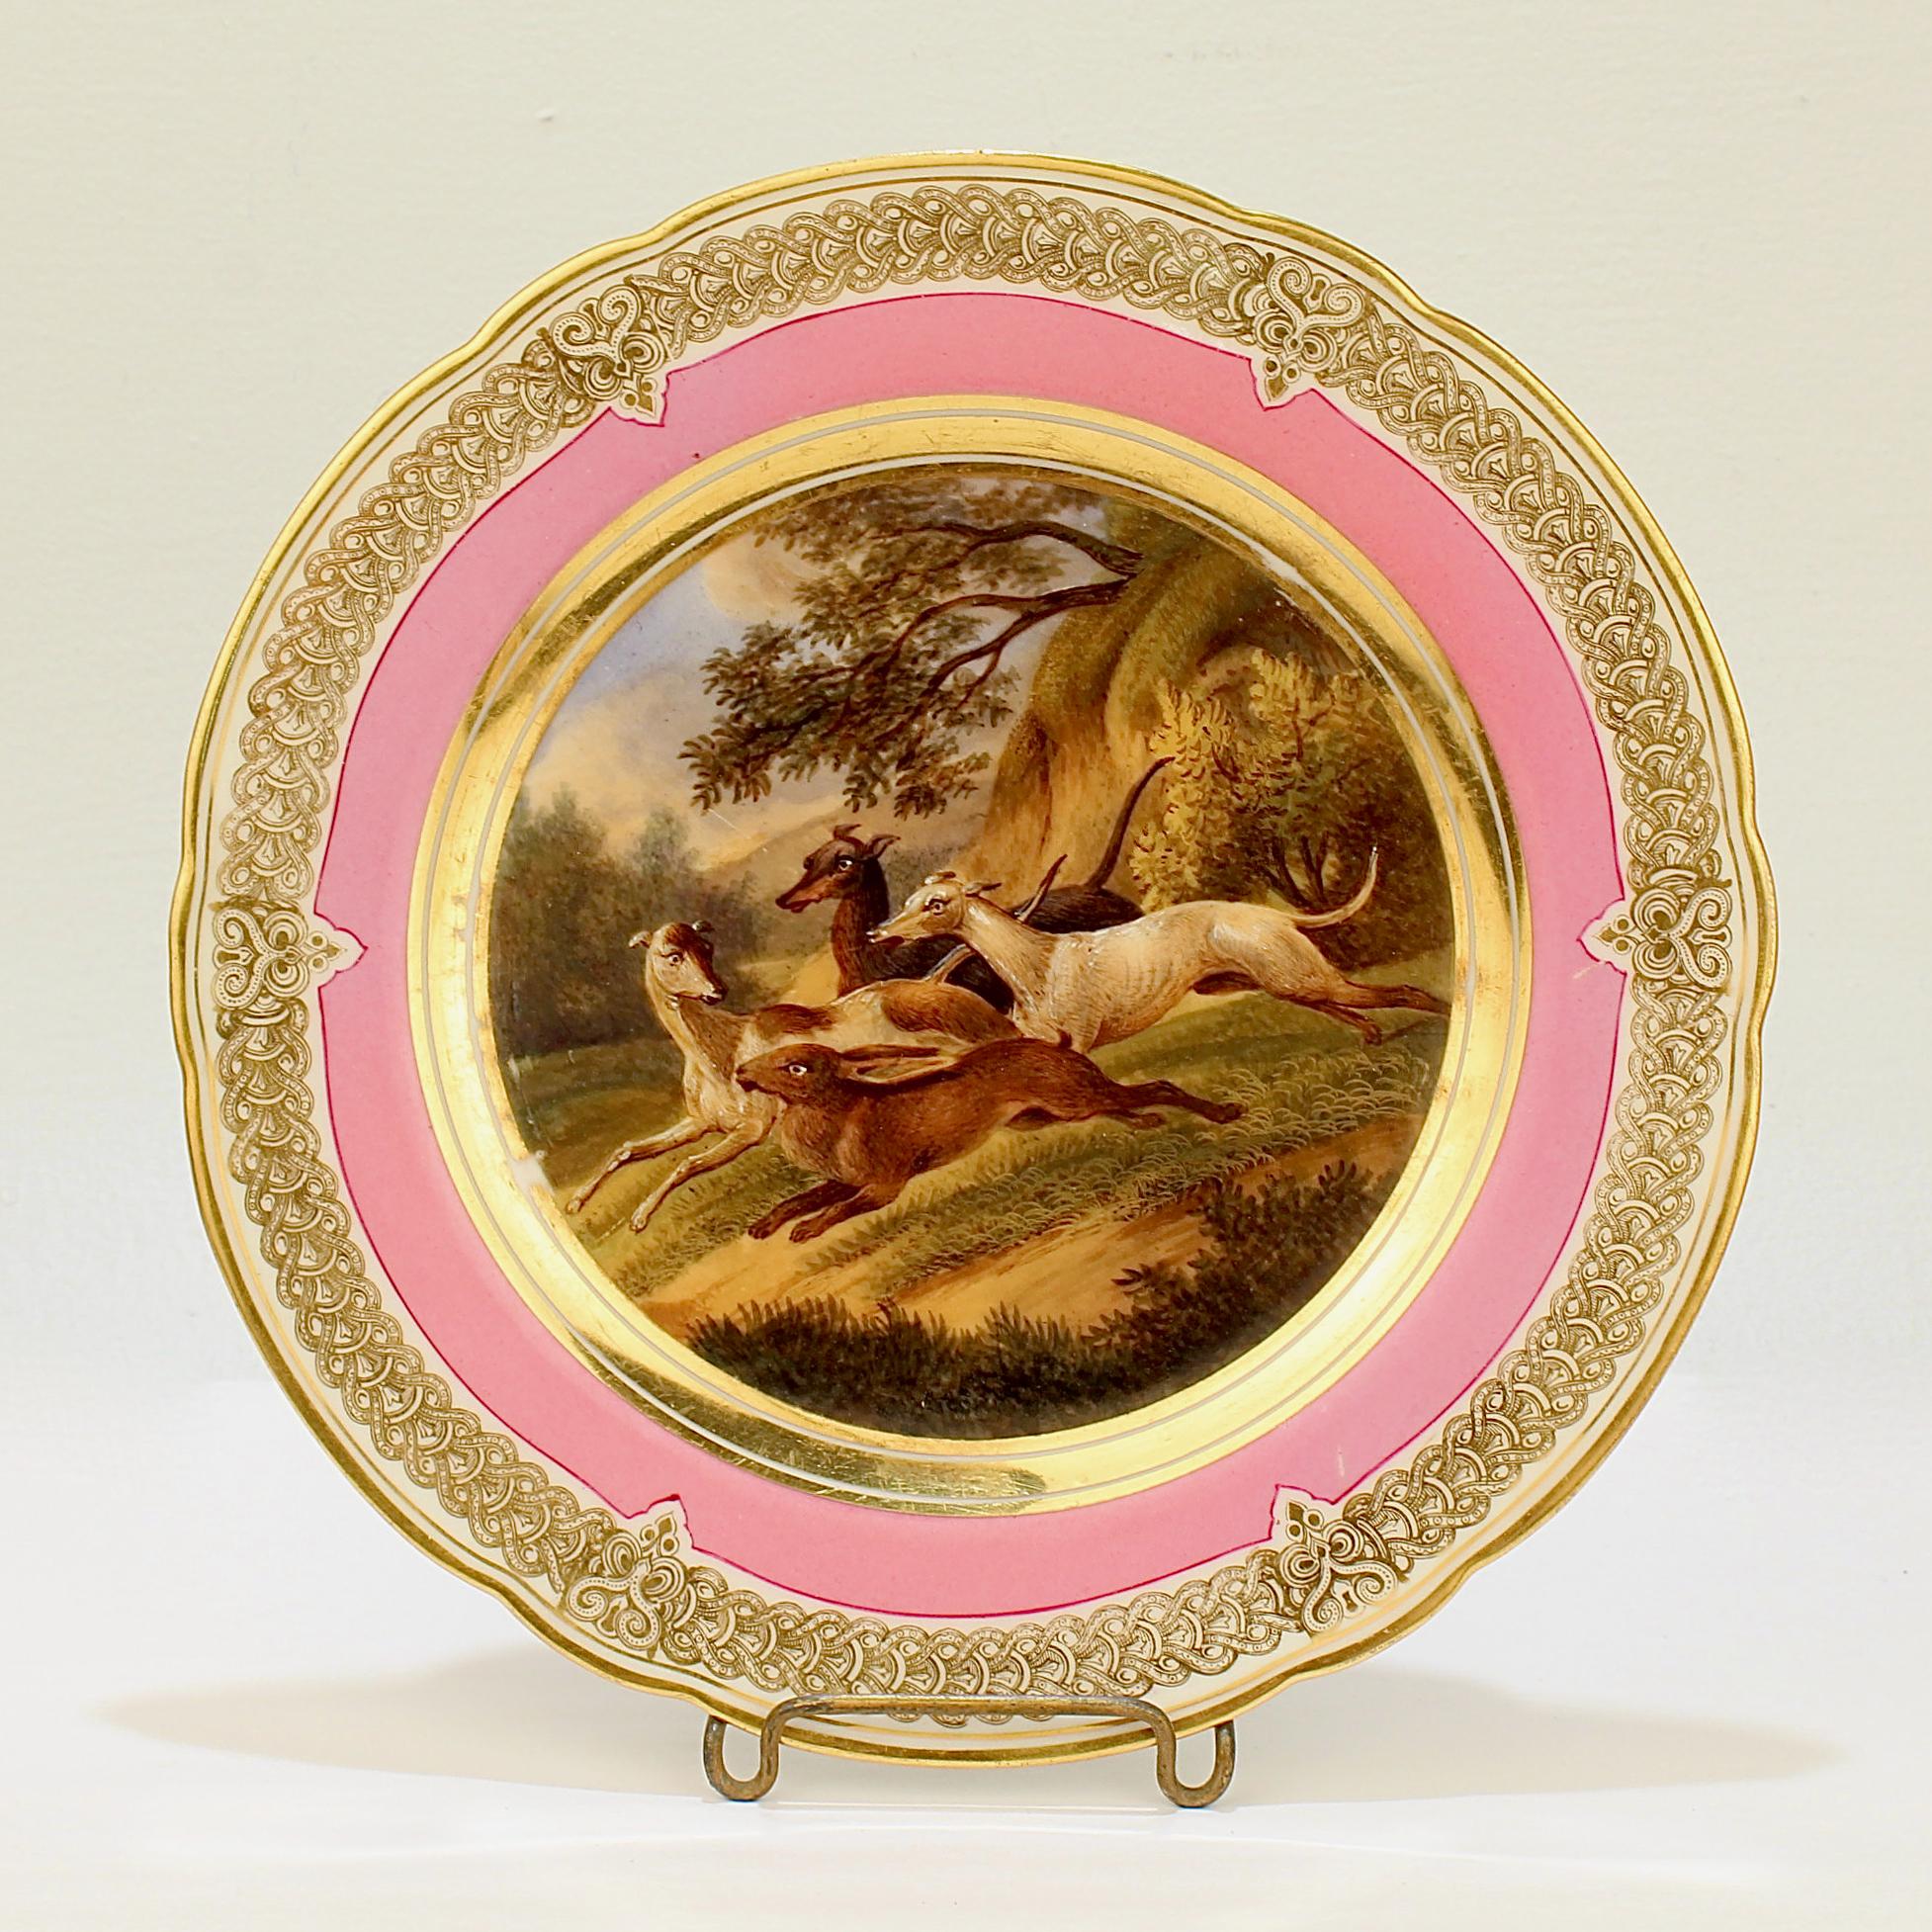 Ein wunderbarer antiker Pariser Porzellanteller aus dem 19. Jahrhundert.

Mit einer handgemalten Szene einer Kaninchenjagd in einer idyllischen Landschaft. Drei Windhunde oder Whippets jagen hinterher.

Es hat einen rosafarbenen Rand und ein